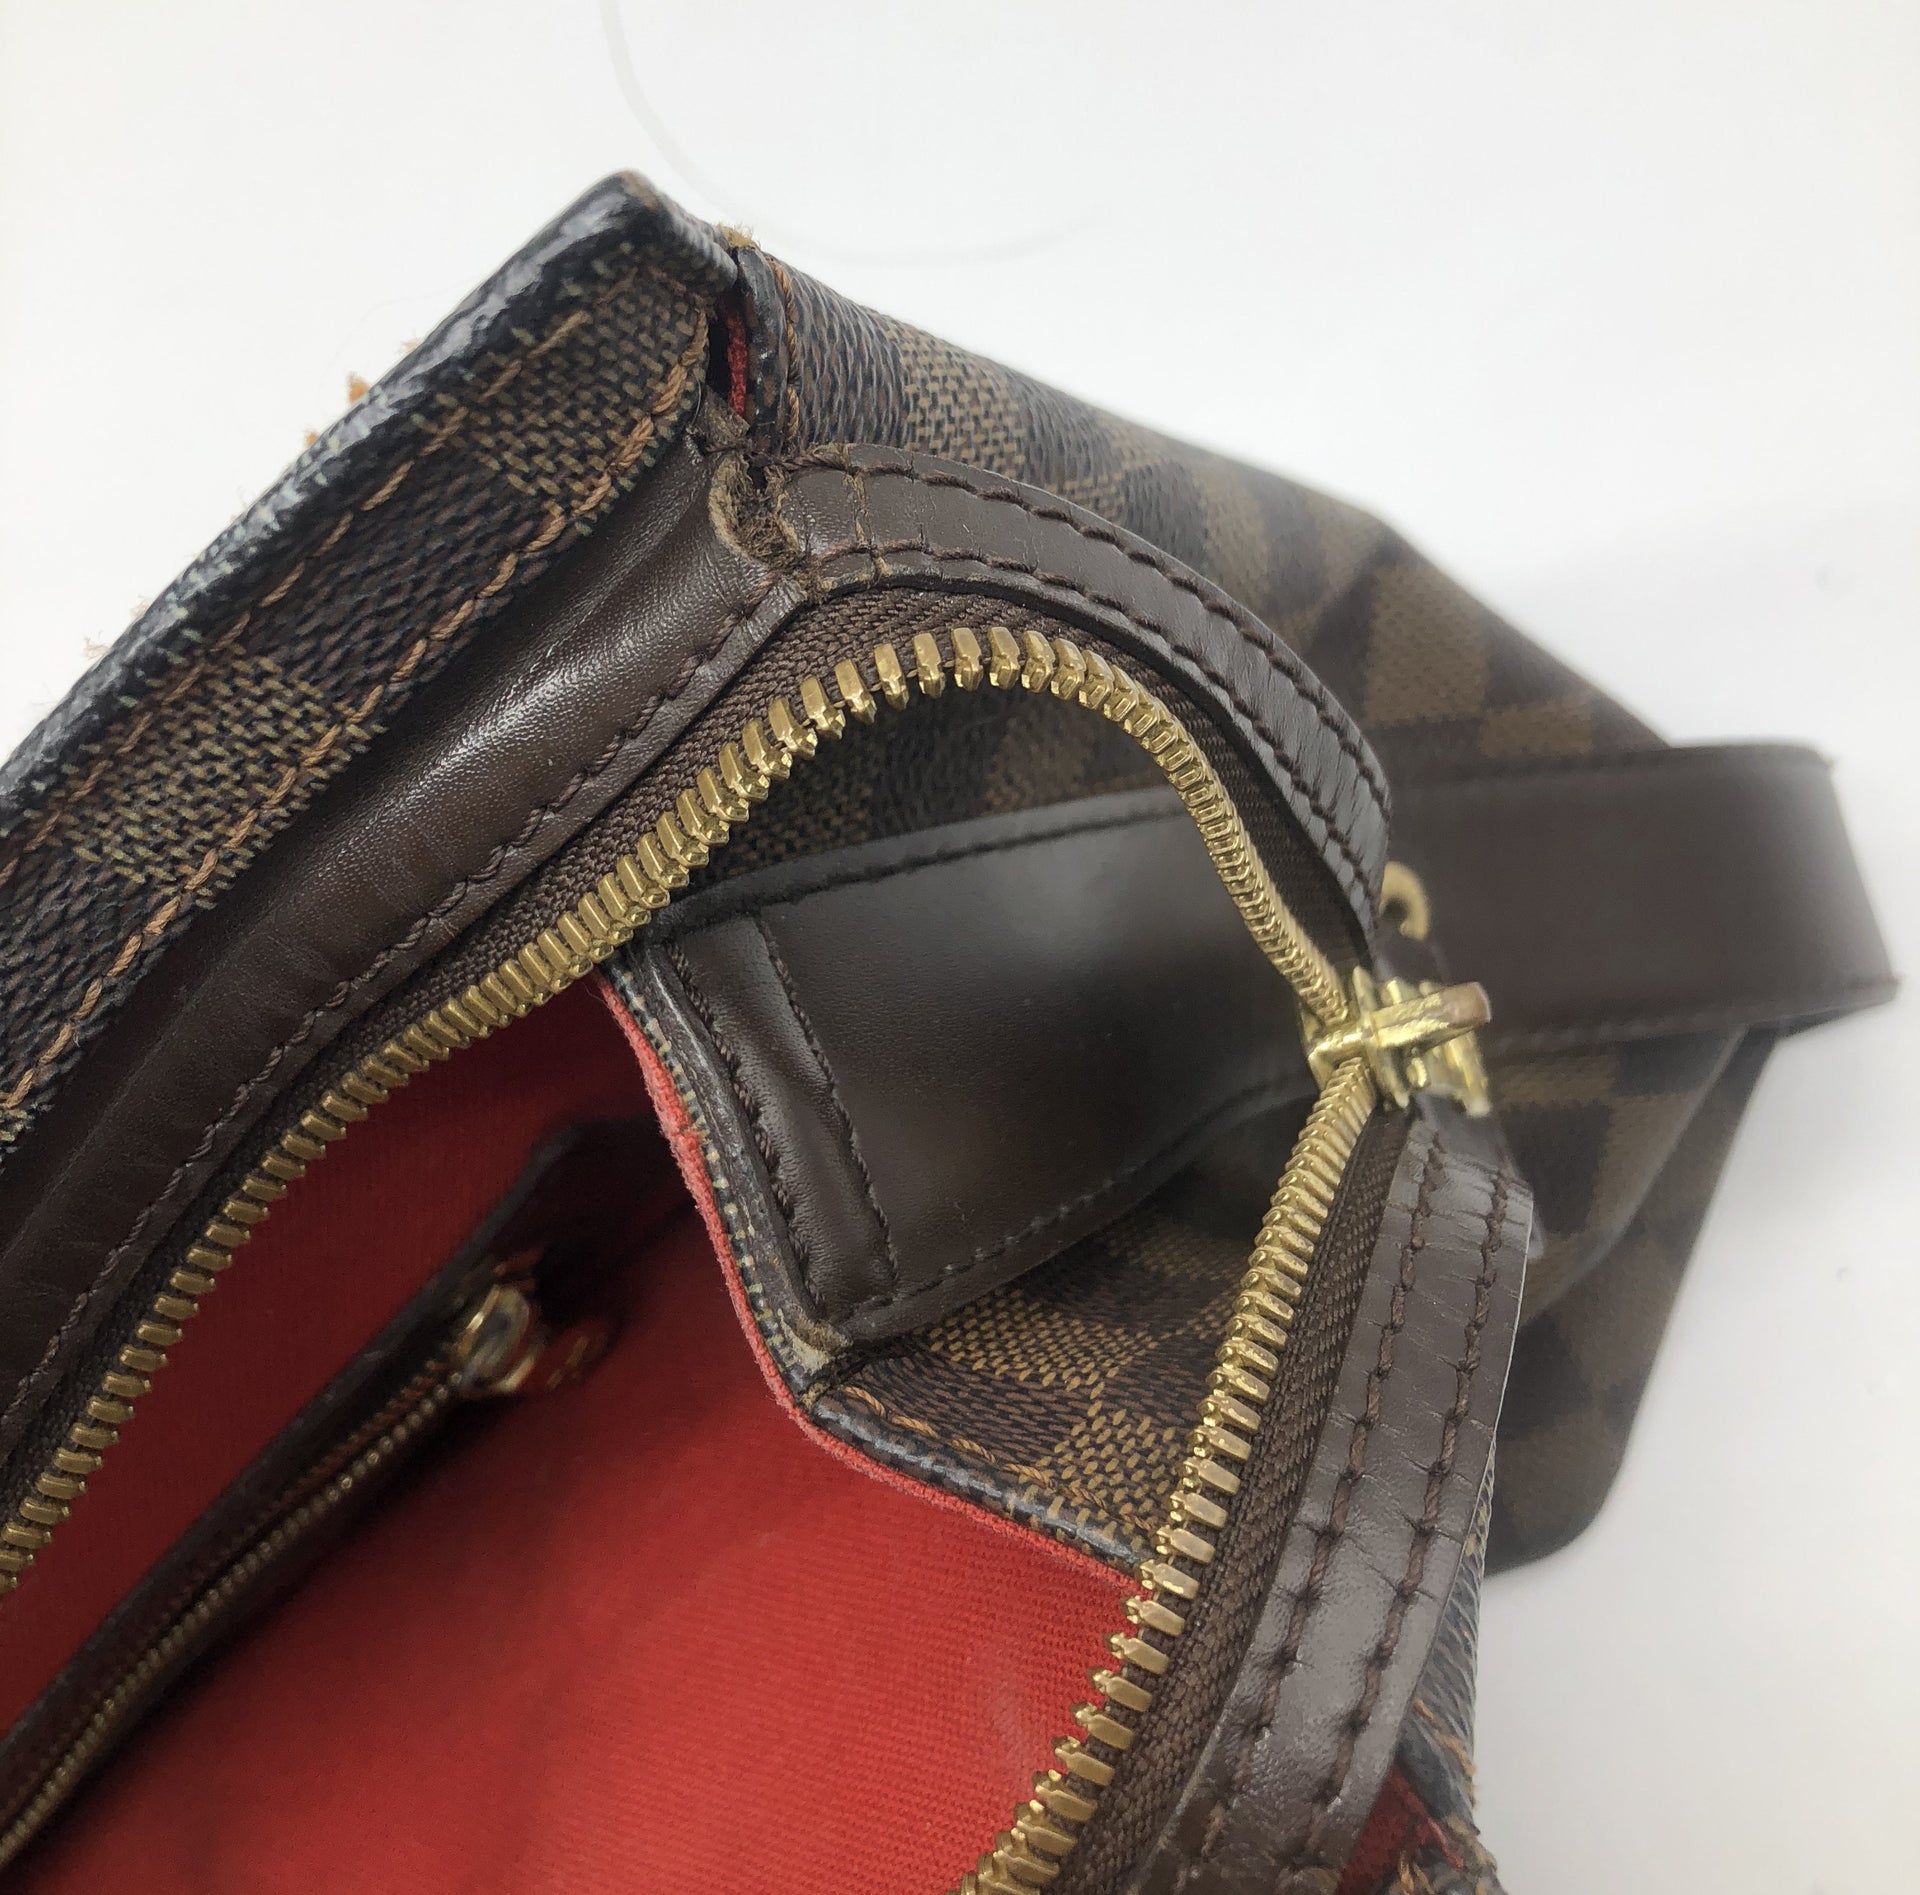 Louis Vuitton Chelsea Damier Ebene Shoulder Bag on SALE